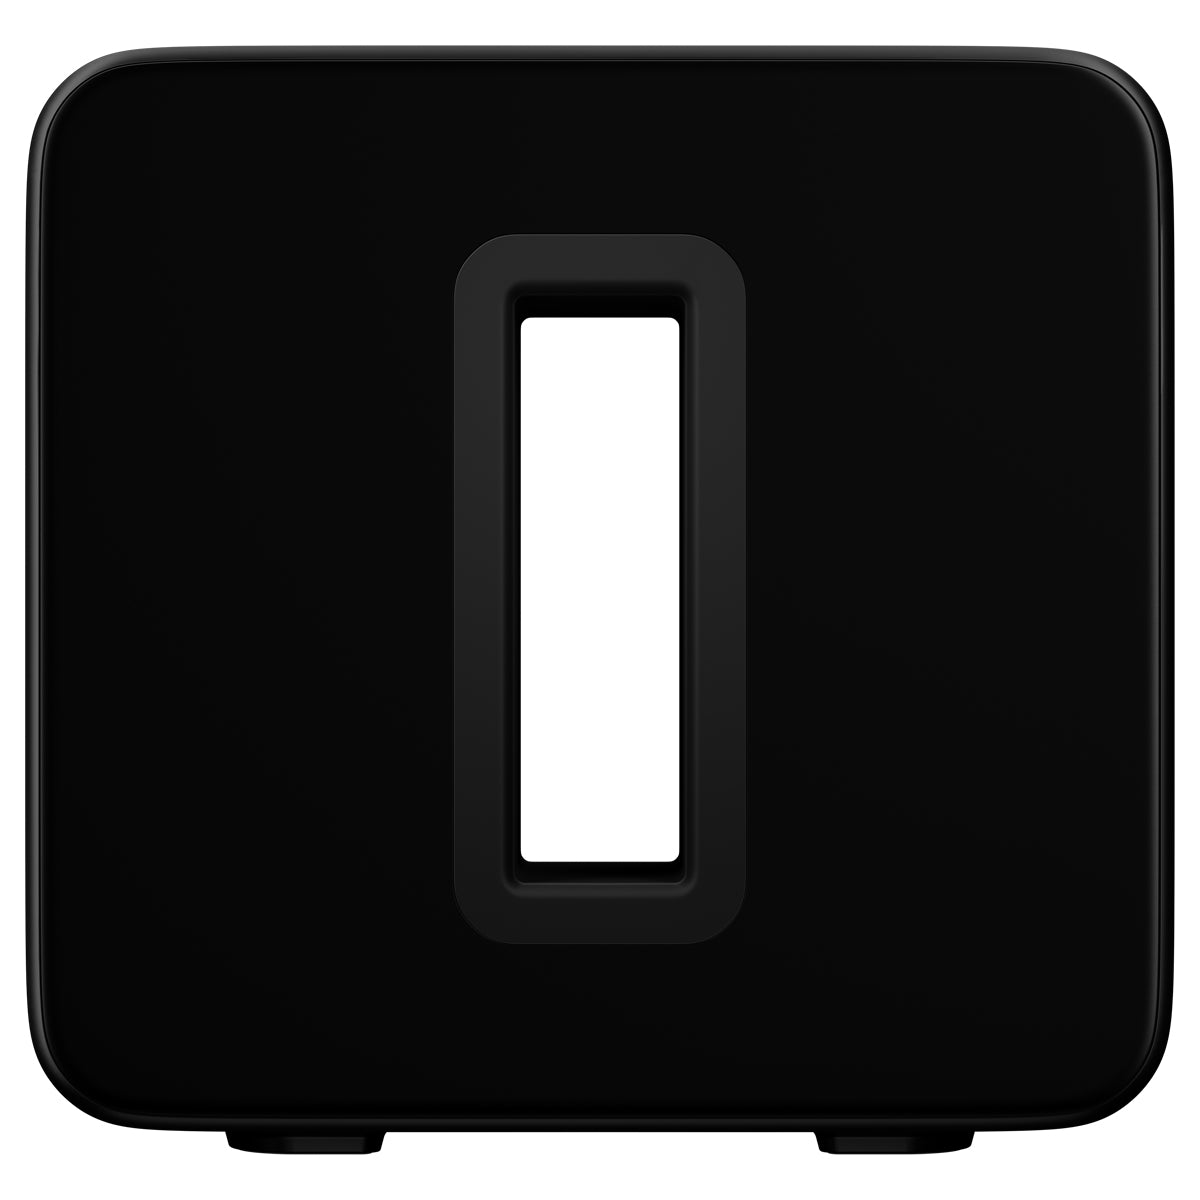 Sonos SUB Premium Wireless Subwoofer Black - The Audio Experts